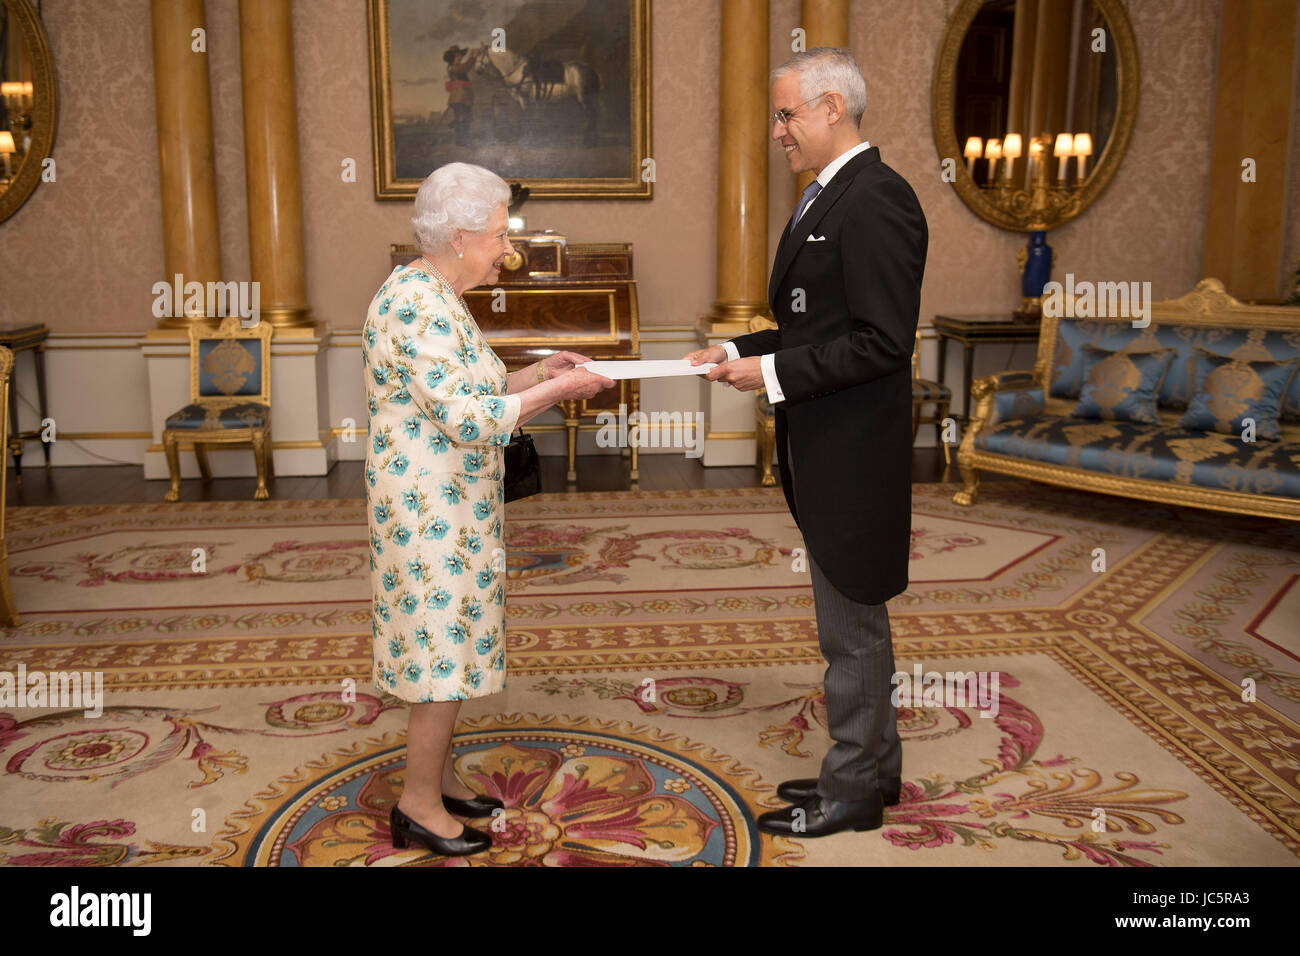 Königin Elizabeth II wird mit den Buchstaben erinnern seines Vorgängers und sein eigenes Beglaubigungsschreiben von seiner Exzellenz Julian Ventura Valero, der Botschafter der Vereinigten Mexikanischen Staaten, während einer Privataudienz im Londoner Buckingham Palace präsentiert. Stockfoto